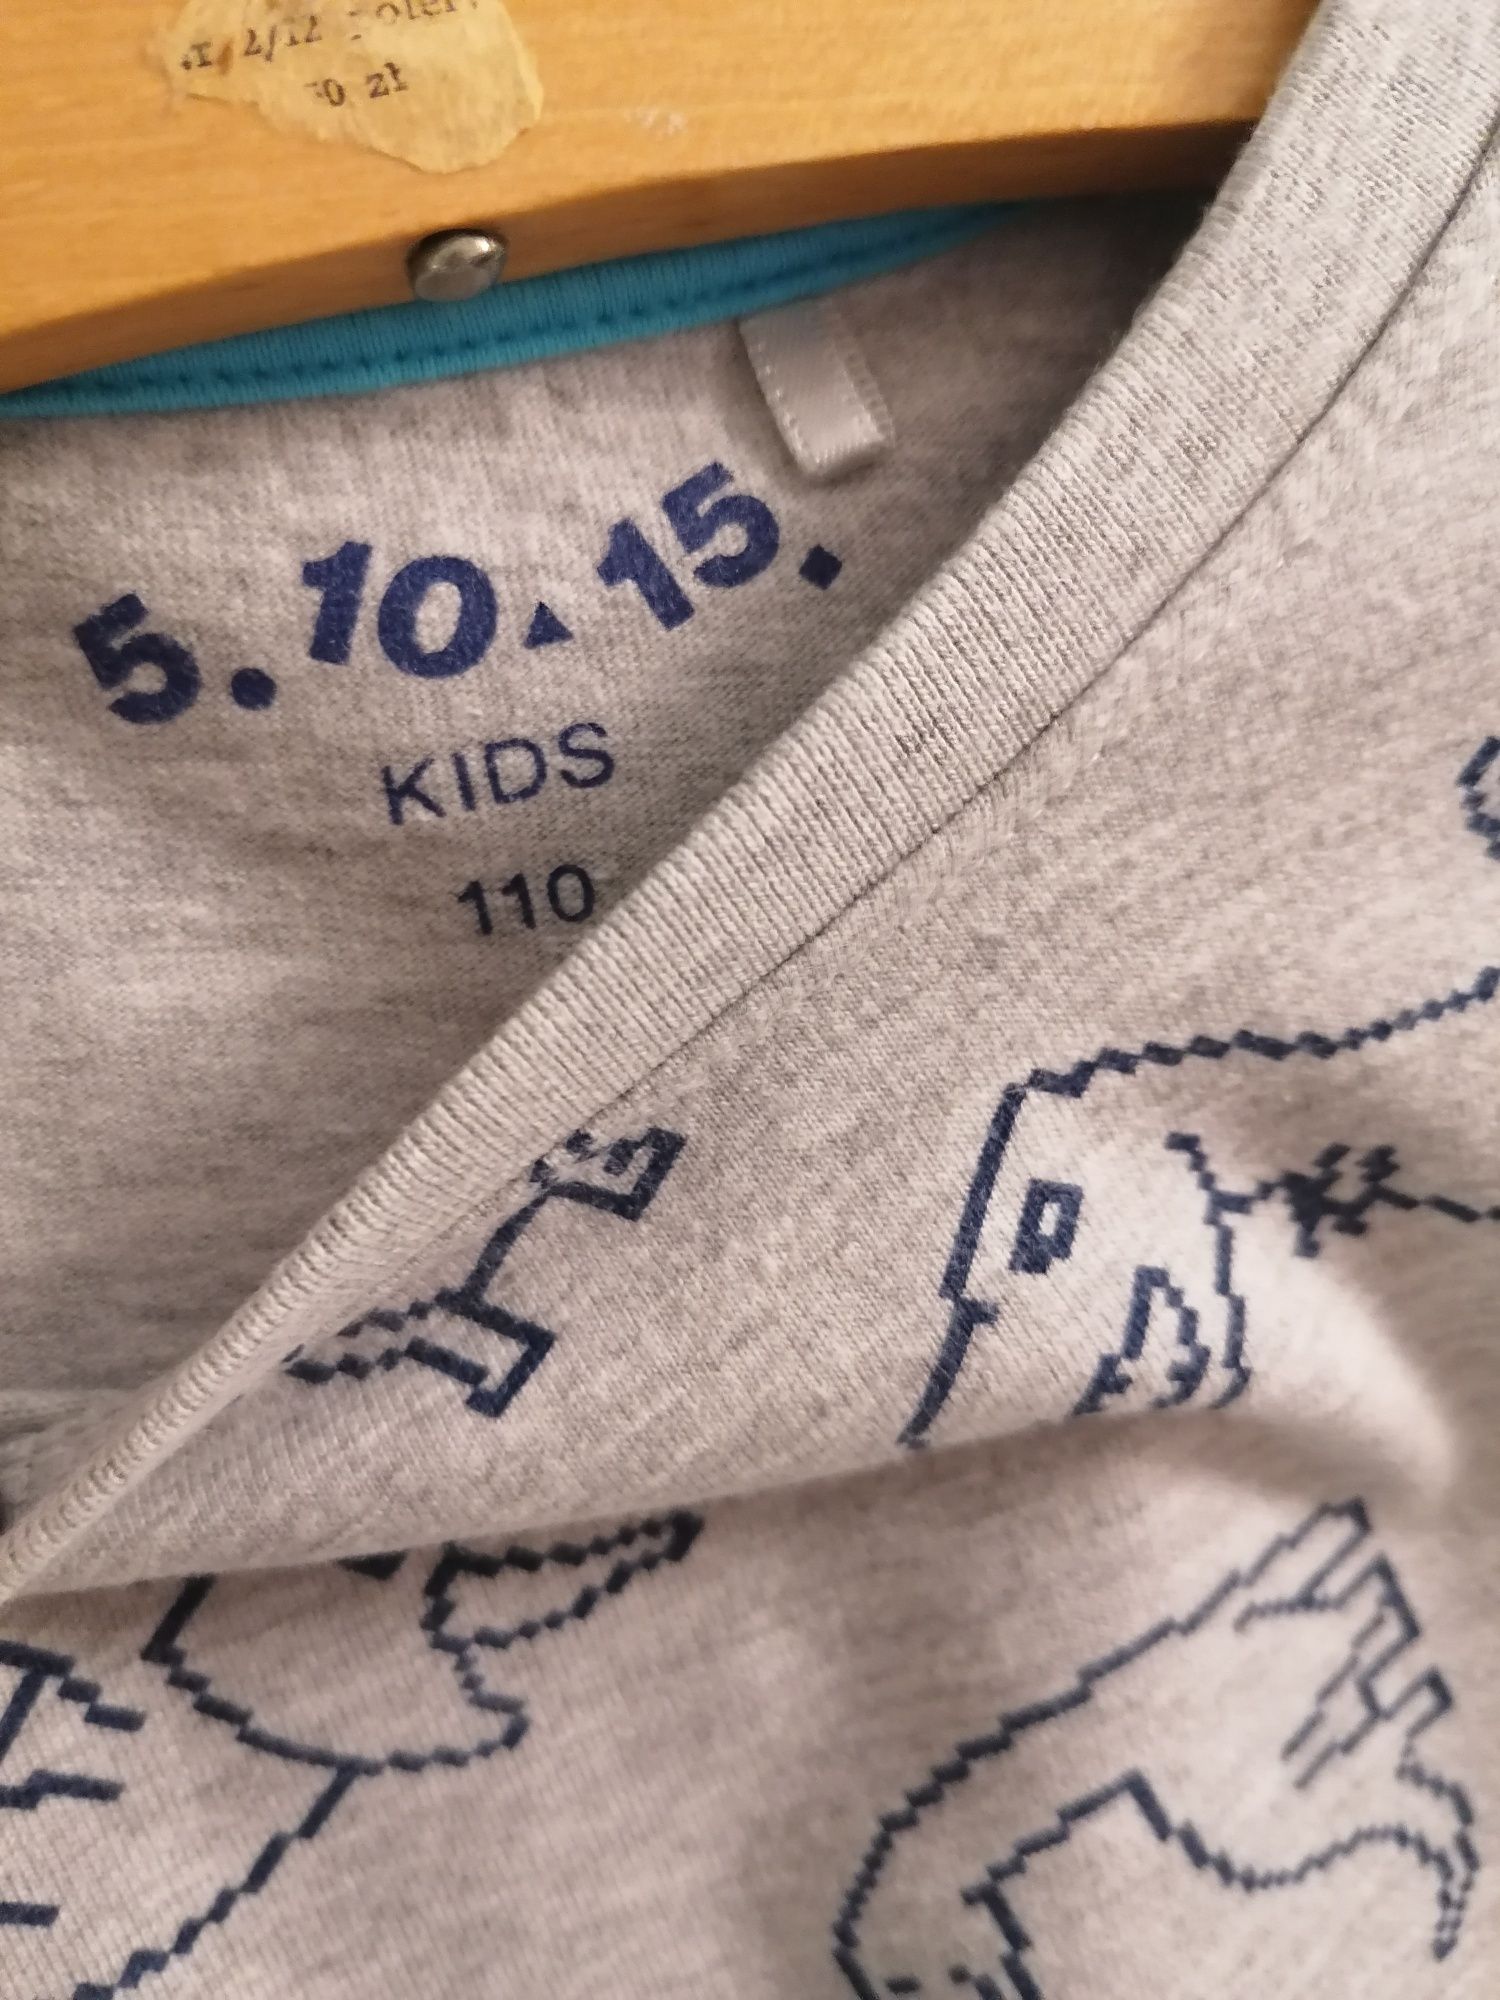 Cienka bluza dla chłopca rozm 110 szara dinozaury 5.10.15